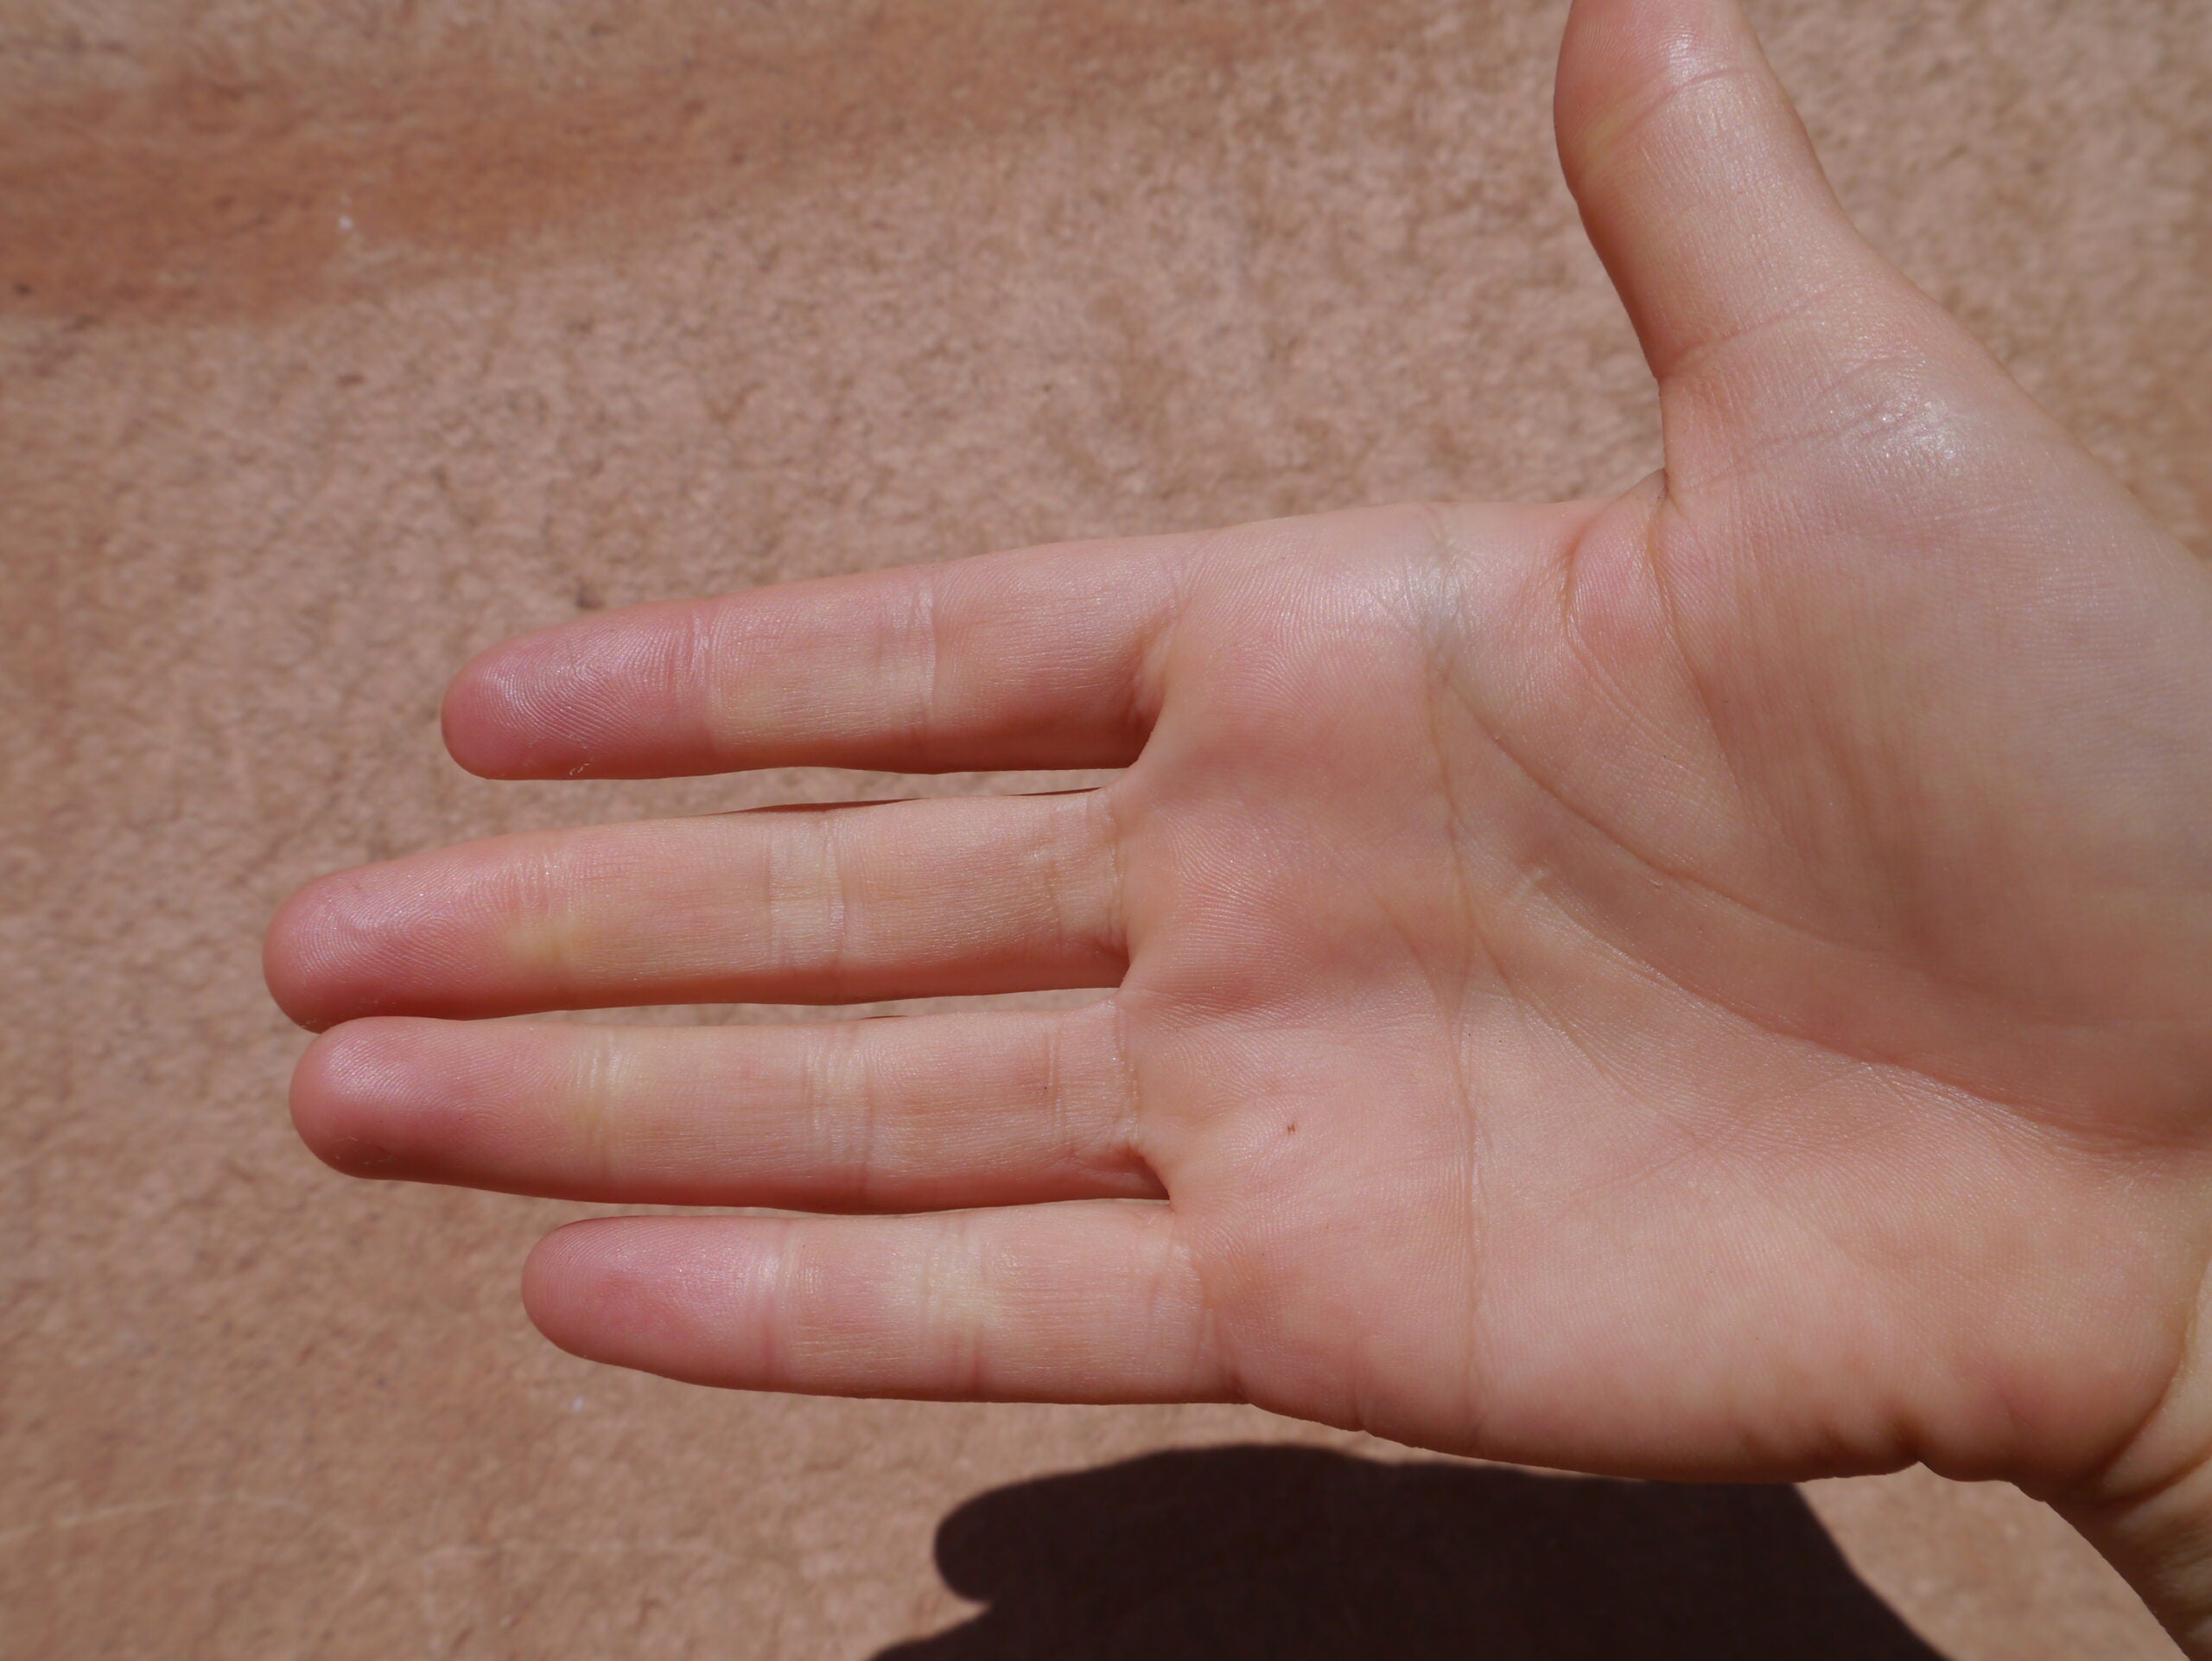 Broken Finger vs Jammed Finger: How to Tell the Difference